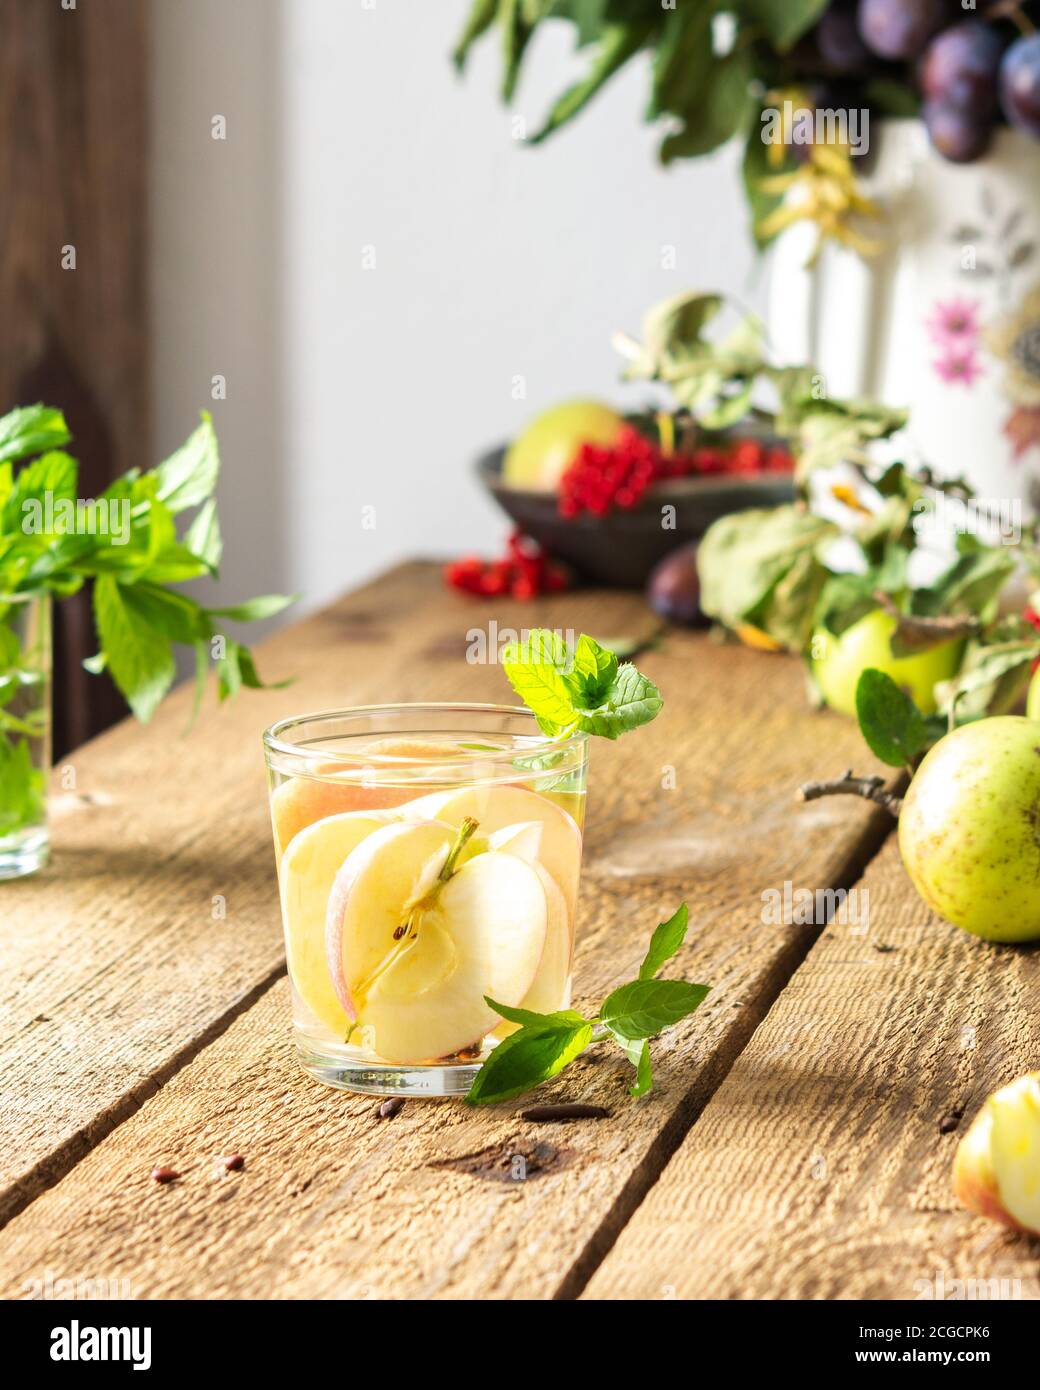 Herbst Apfelgetränk, Apfelscheiben mit Saft und Minze in einem Glas auf einem Holztisch, Blätter in einer Vase, Morgen im Dorf, rustikales Konzept Stockfoto